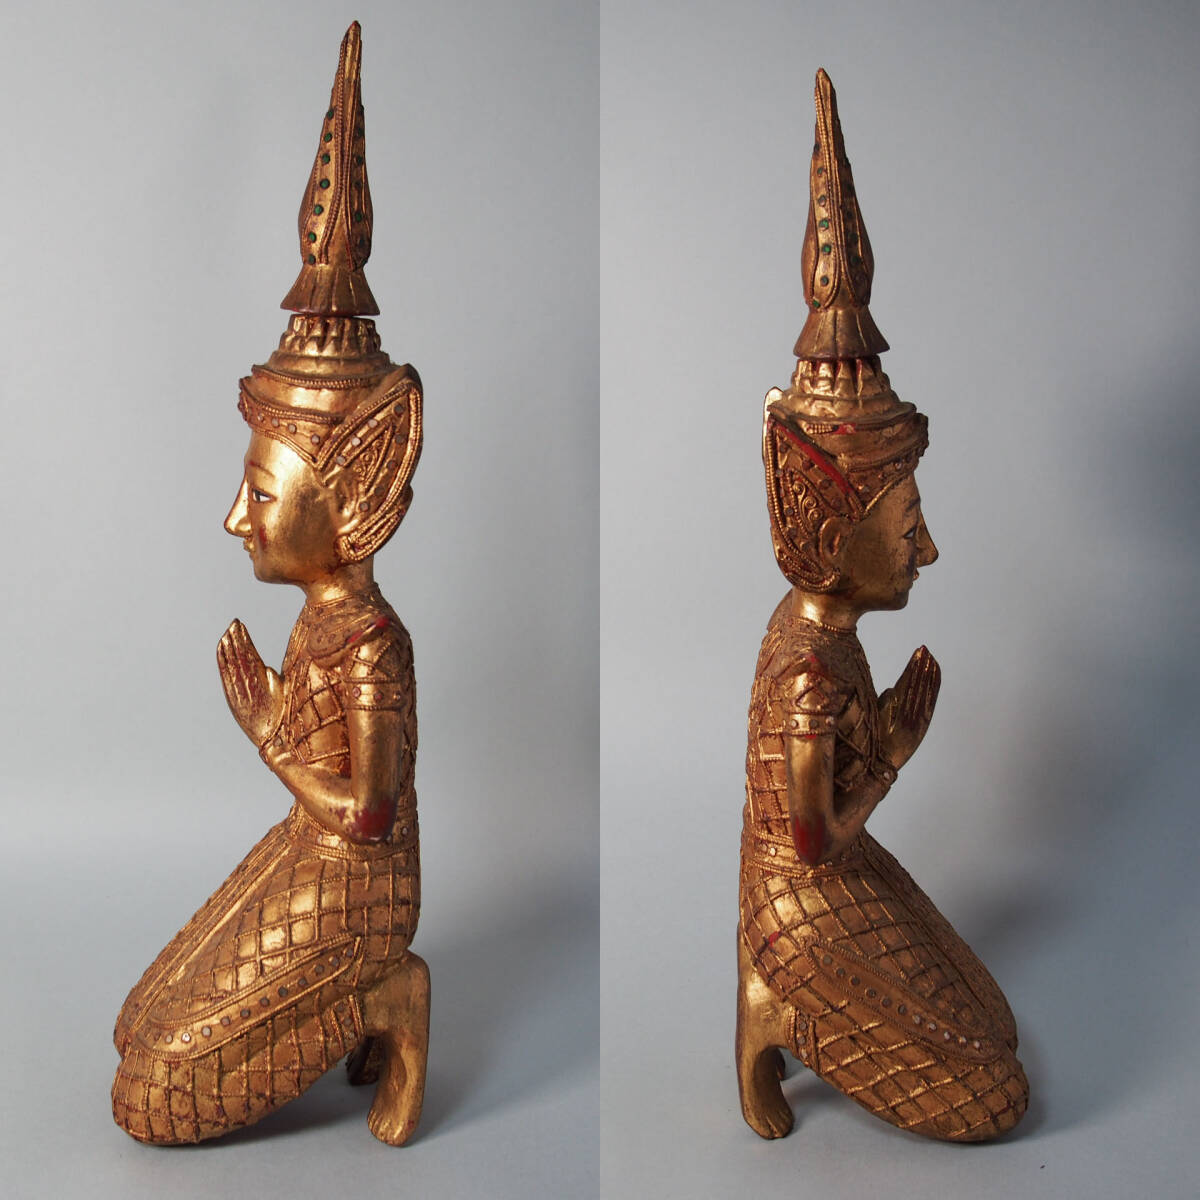 タイ 木製 仏像 テッパノム像 紅地 金塗 高さcm アンコールワット サワディ 木彫 仏教美術 密教 アユタヤ B5_画像2